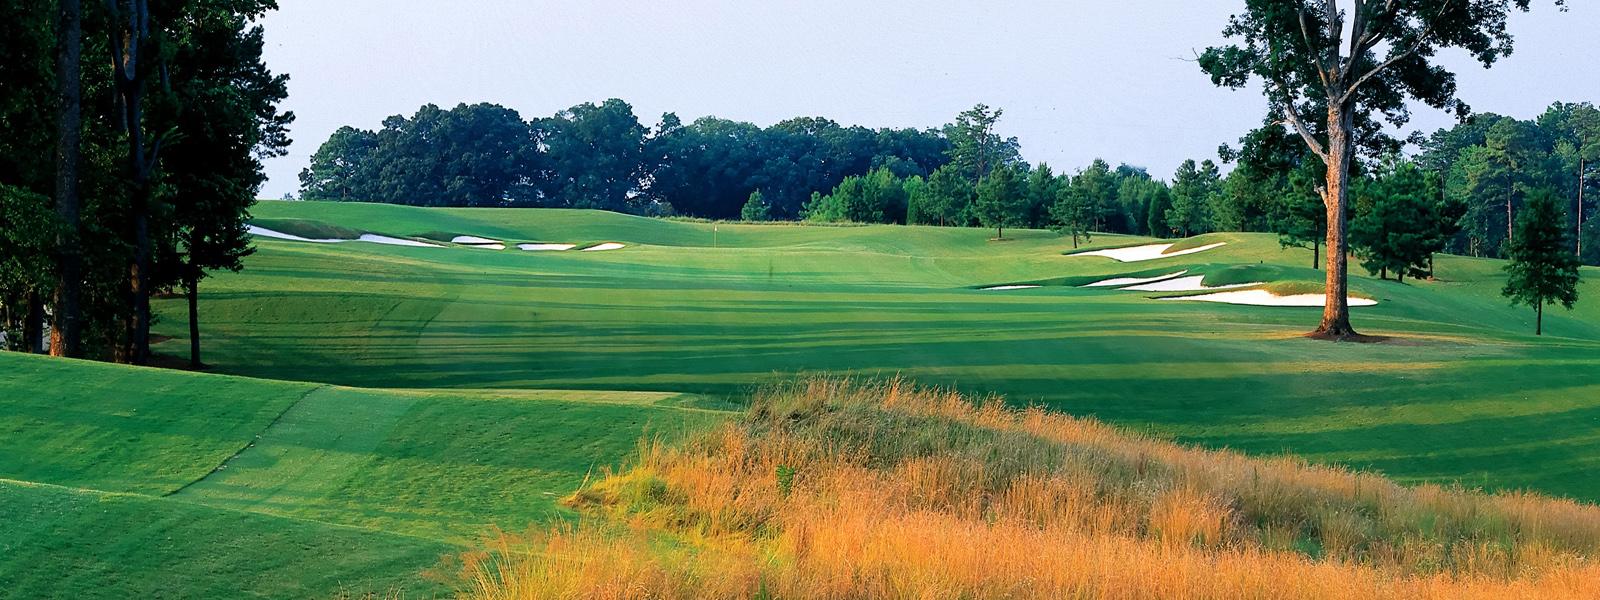 2019 BYU Alumni Golf Tournament - Raleigh/Durham Chapter